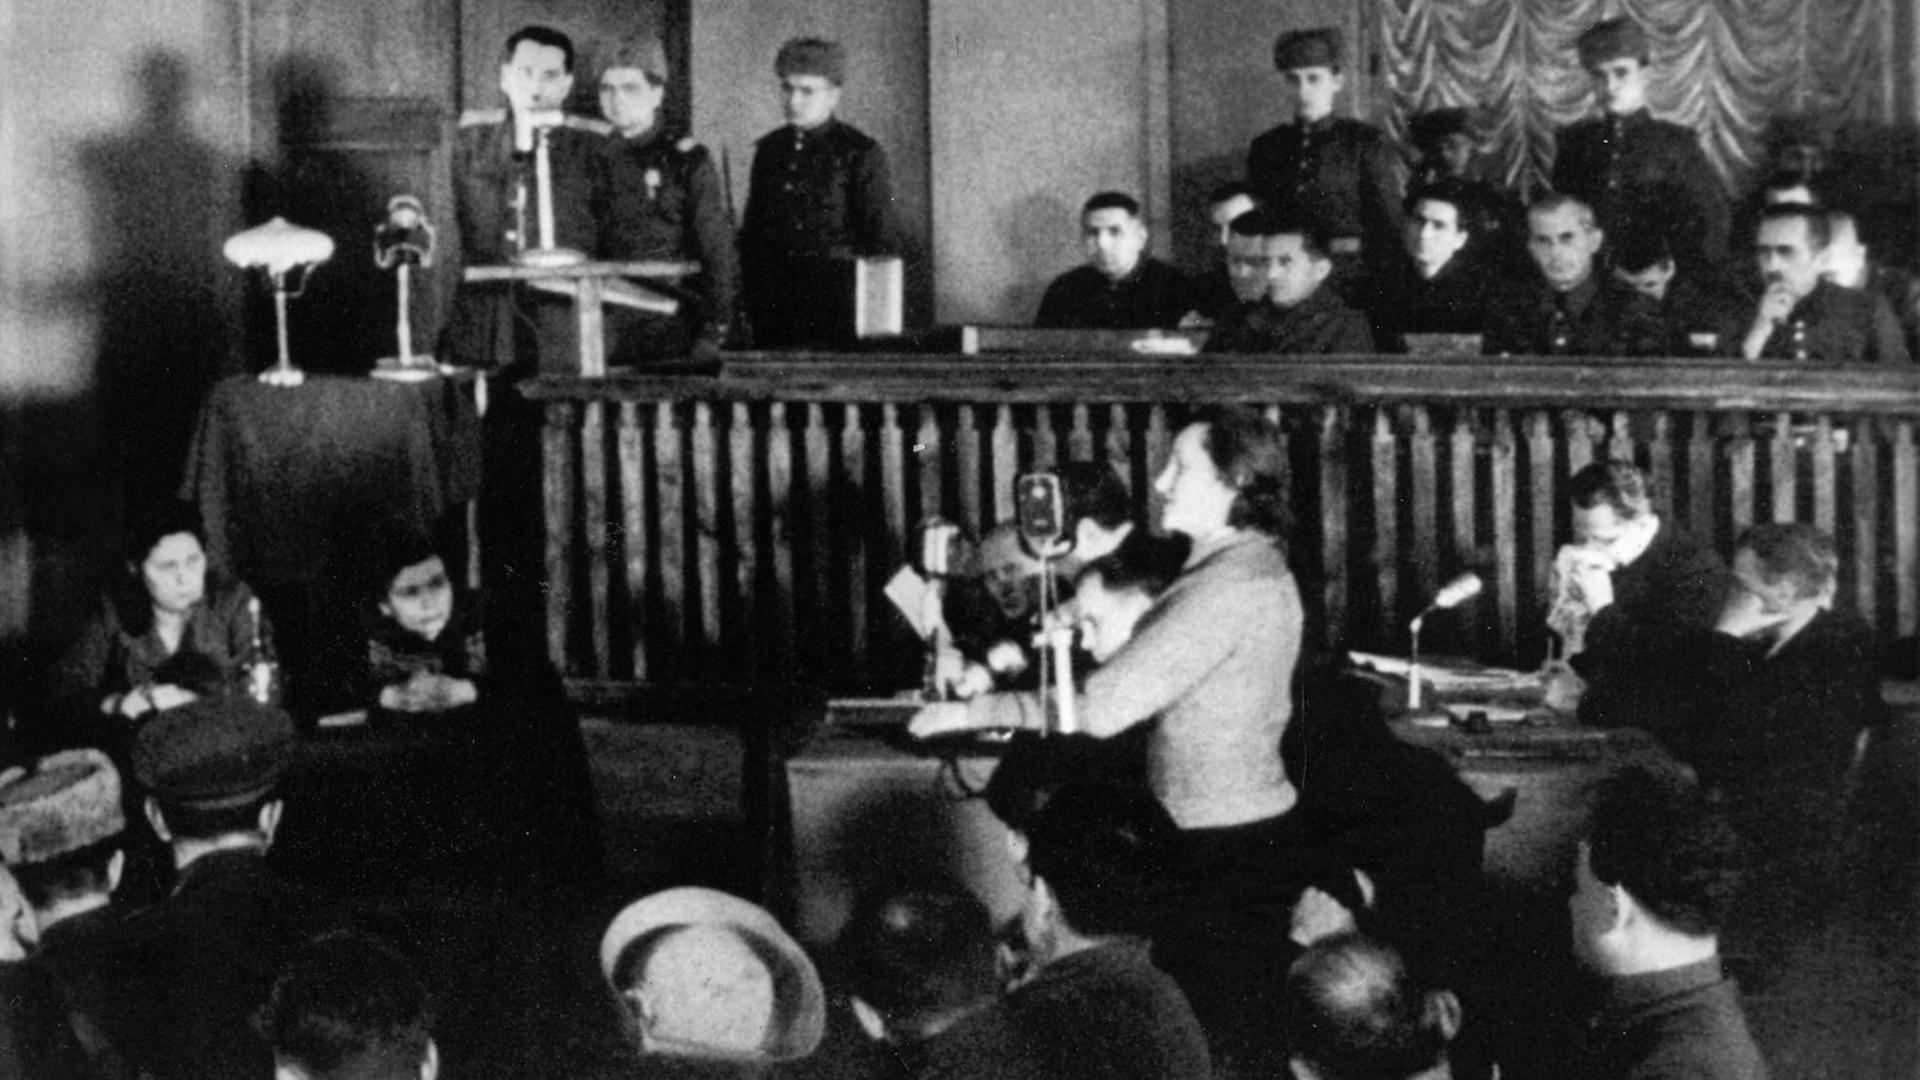 Dina Pronitschewa bei ihrer Zeugenaussage im Kiewer Prozess am 24. Januar 1946, bei dem die verantwortlichen Deutschen, die gefasst worden waren, zum Tod verurteilt wurden.